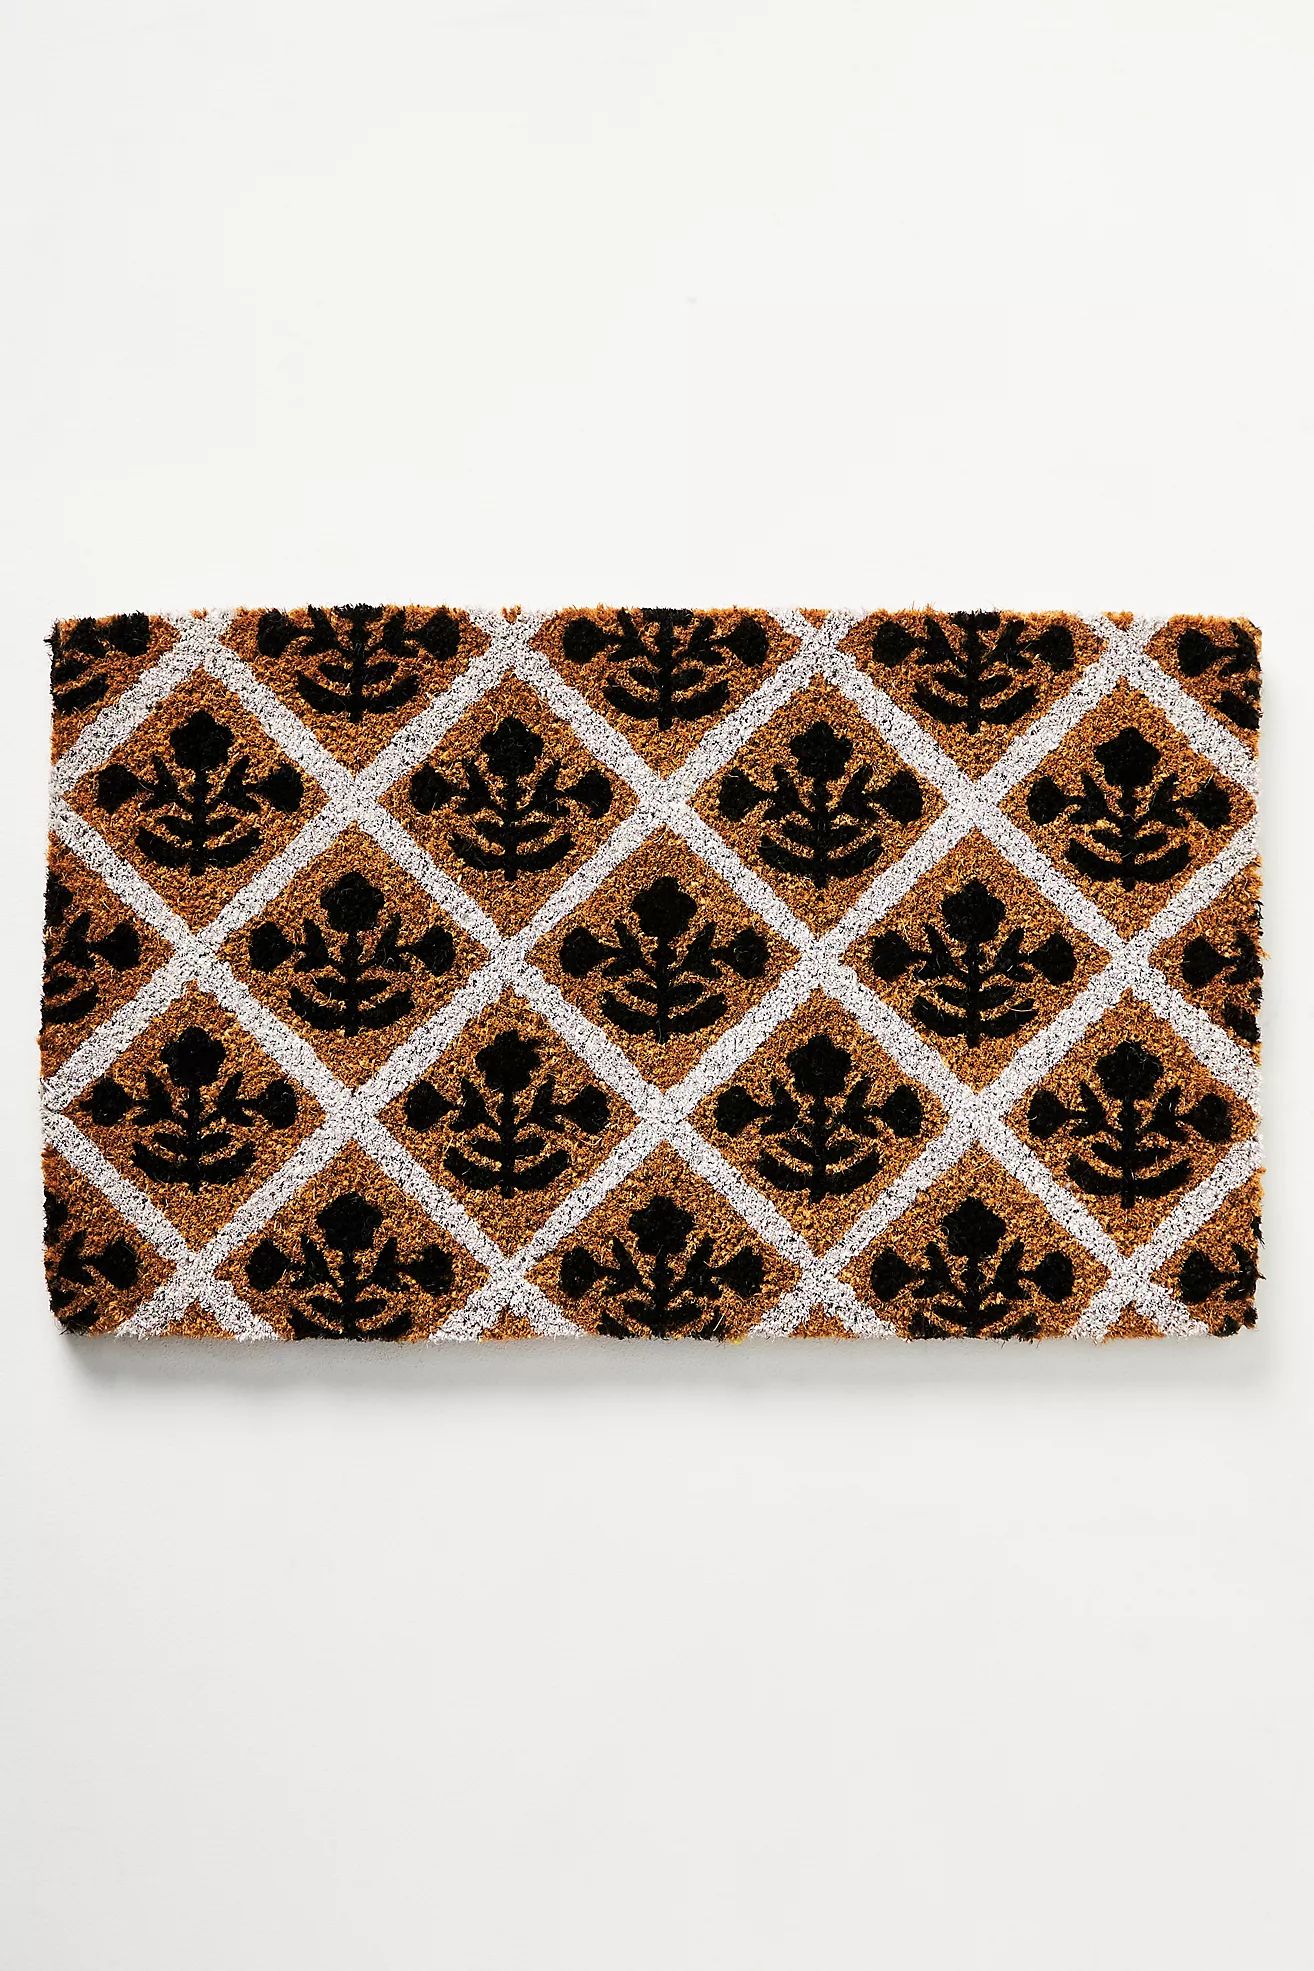 Block Print Doormat | Anthropologie (US)